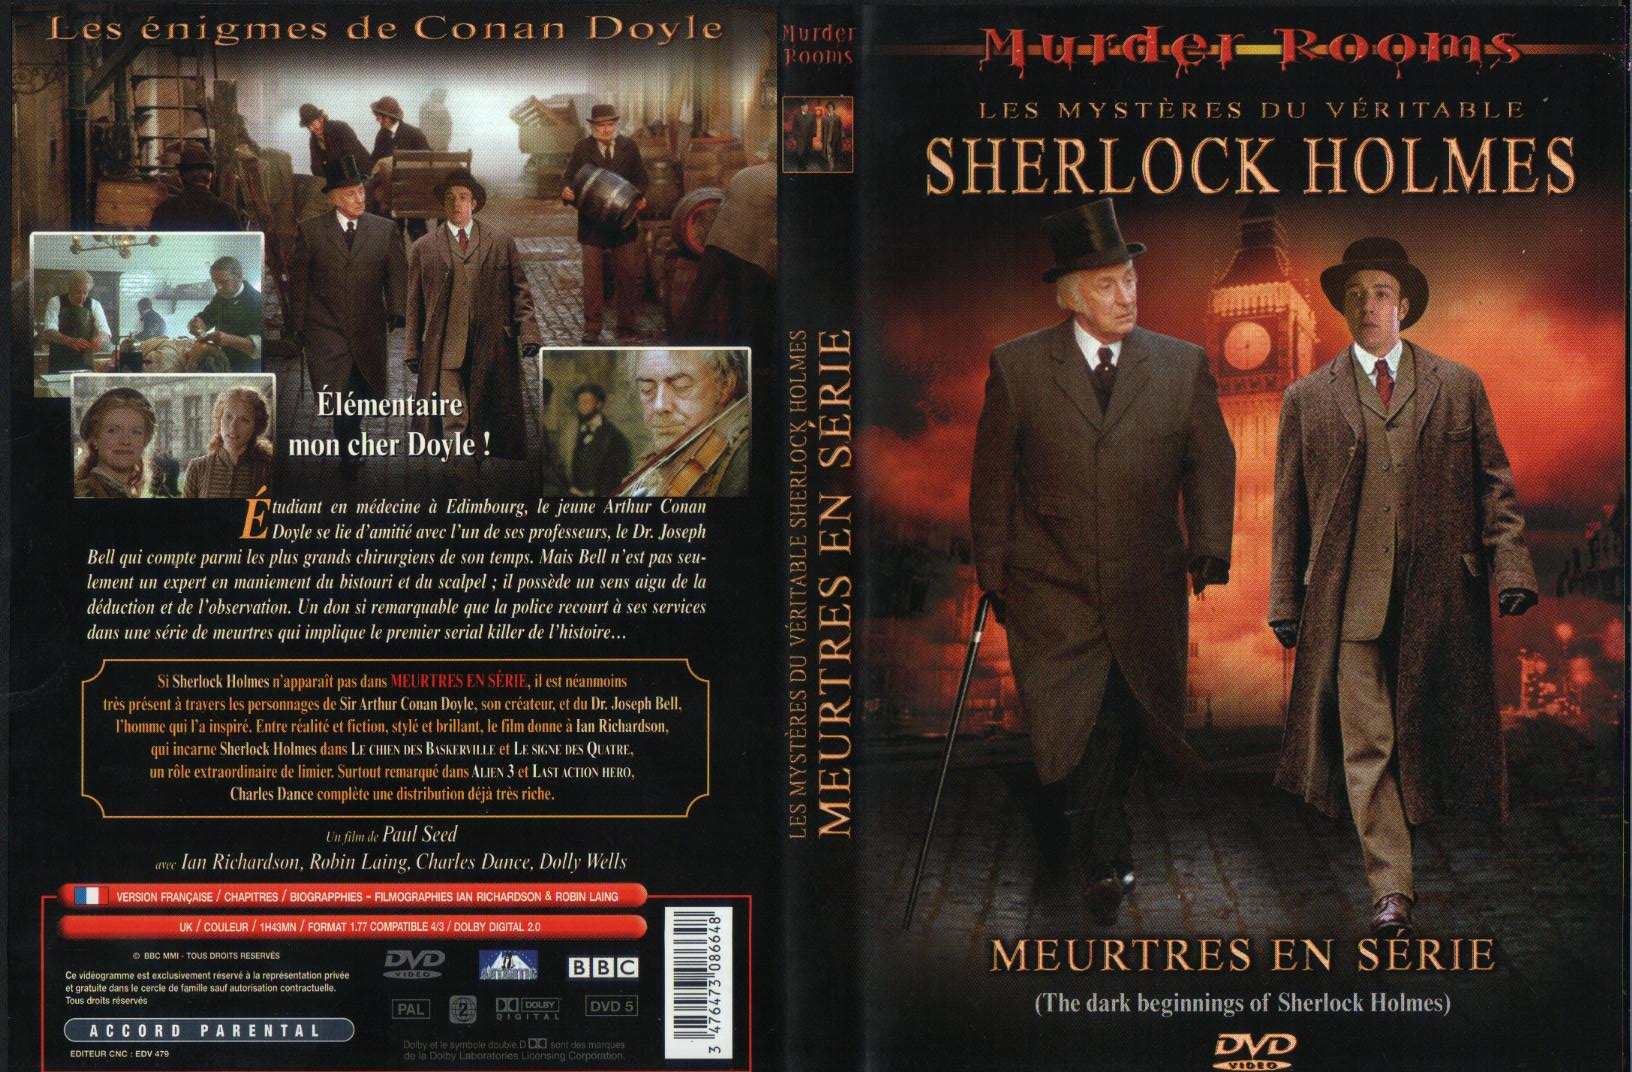 Jaquette DVD Sherlock Holmes - meurtres en srie